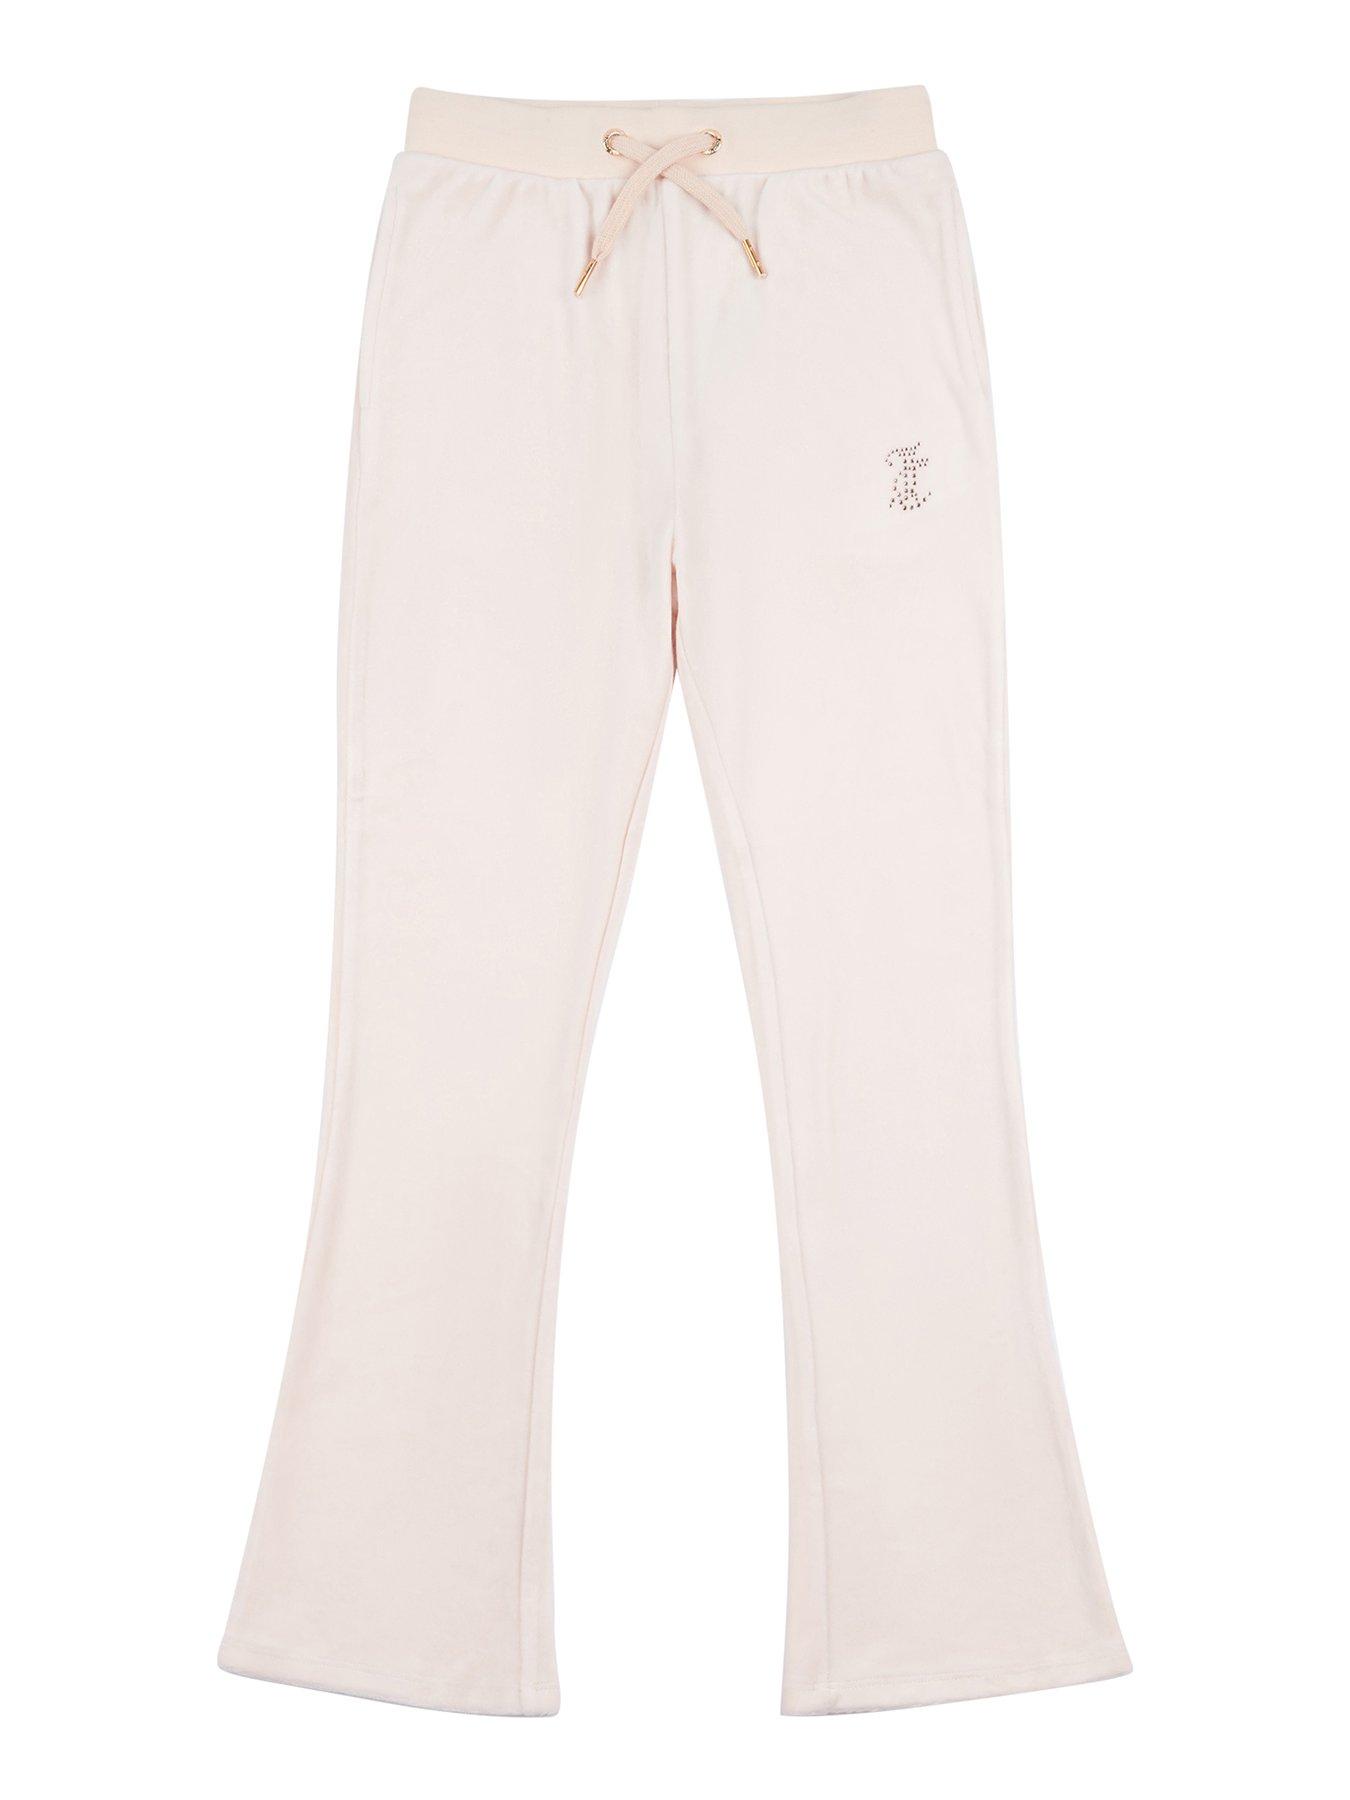 Victoria's Secret Pink Leopard Full Zip Hoodie + Pants Set Vanilla